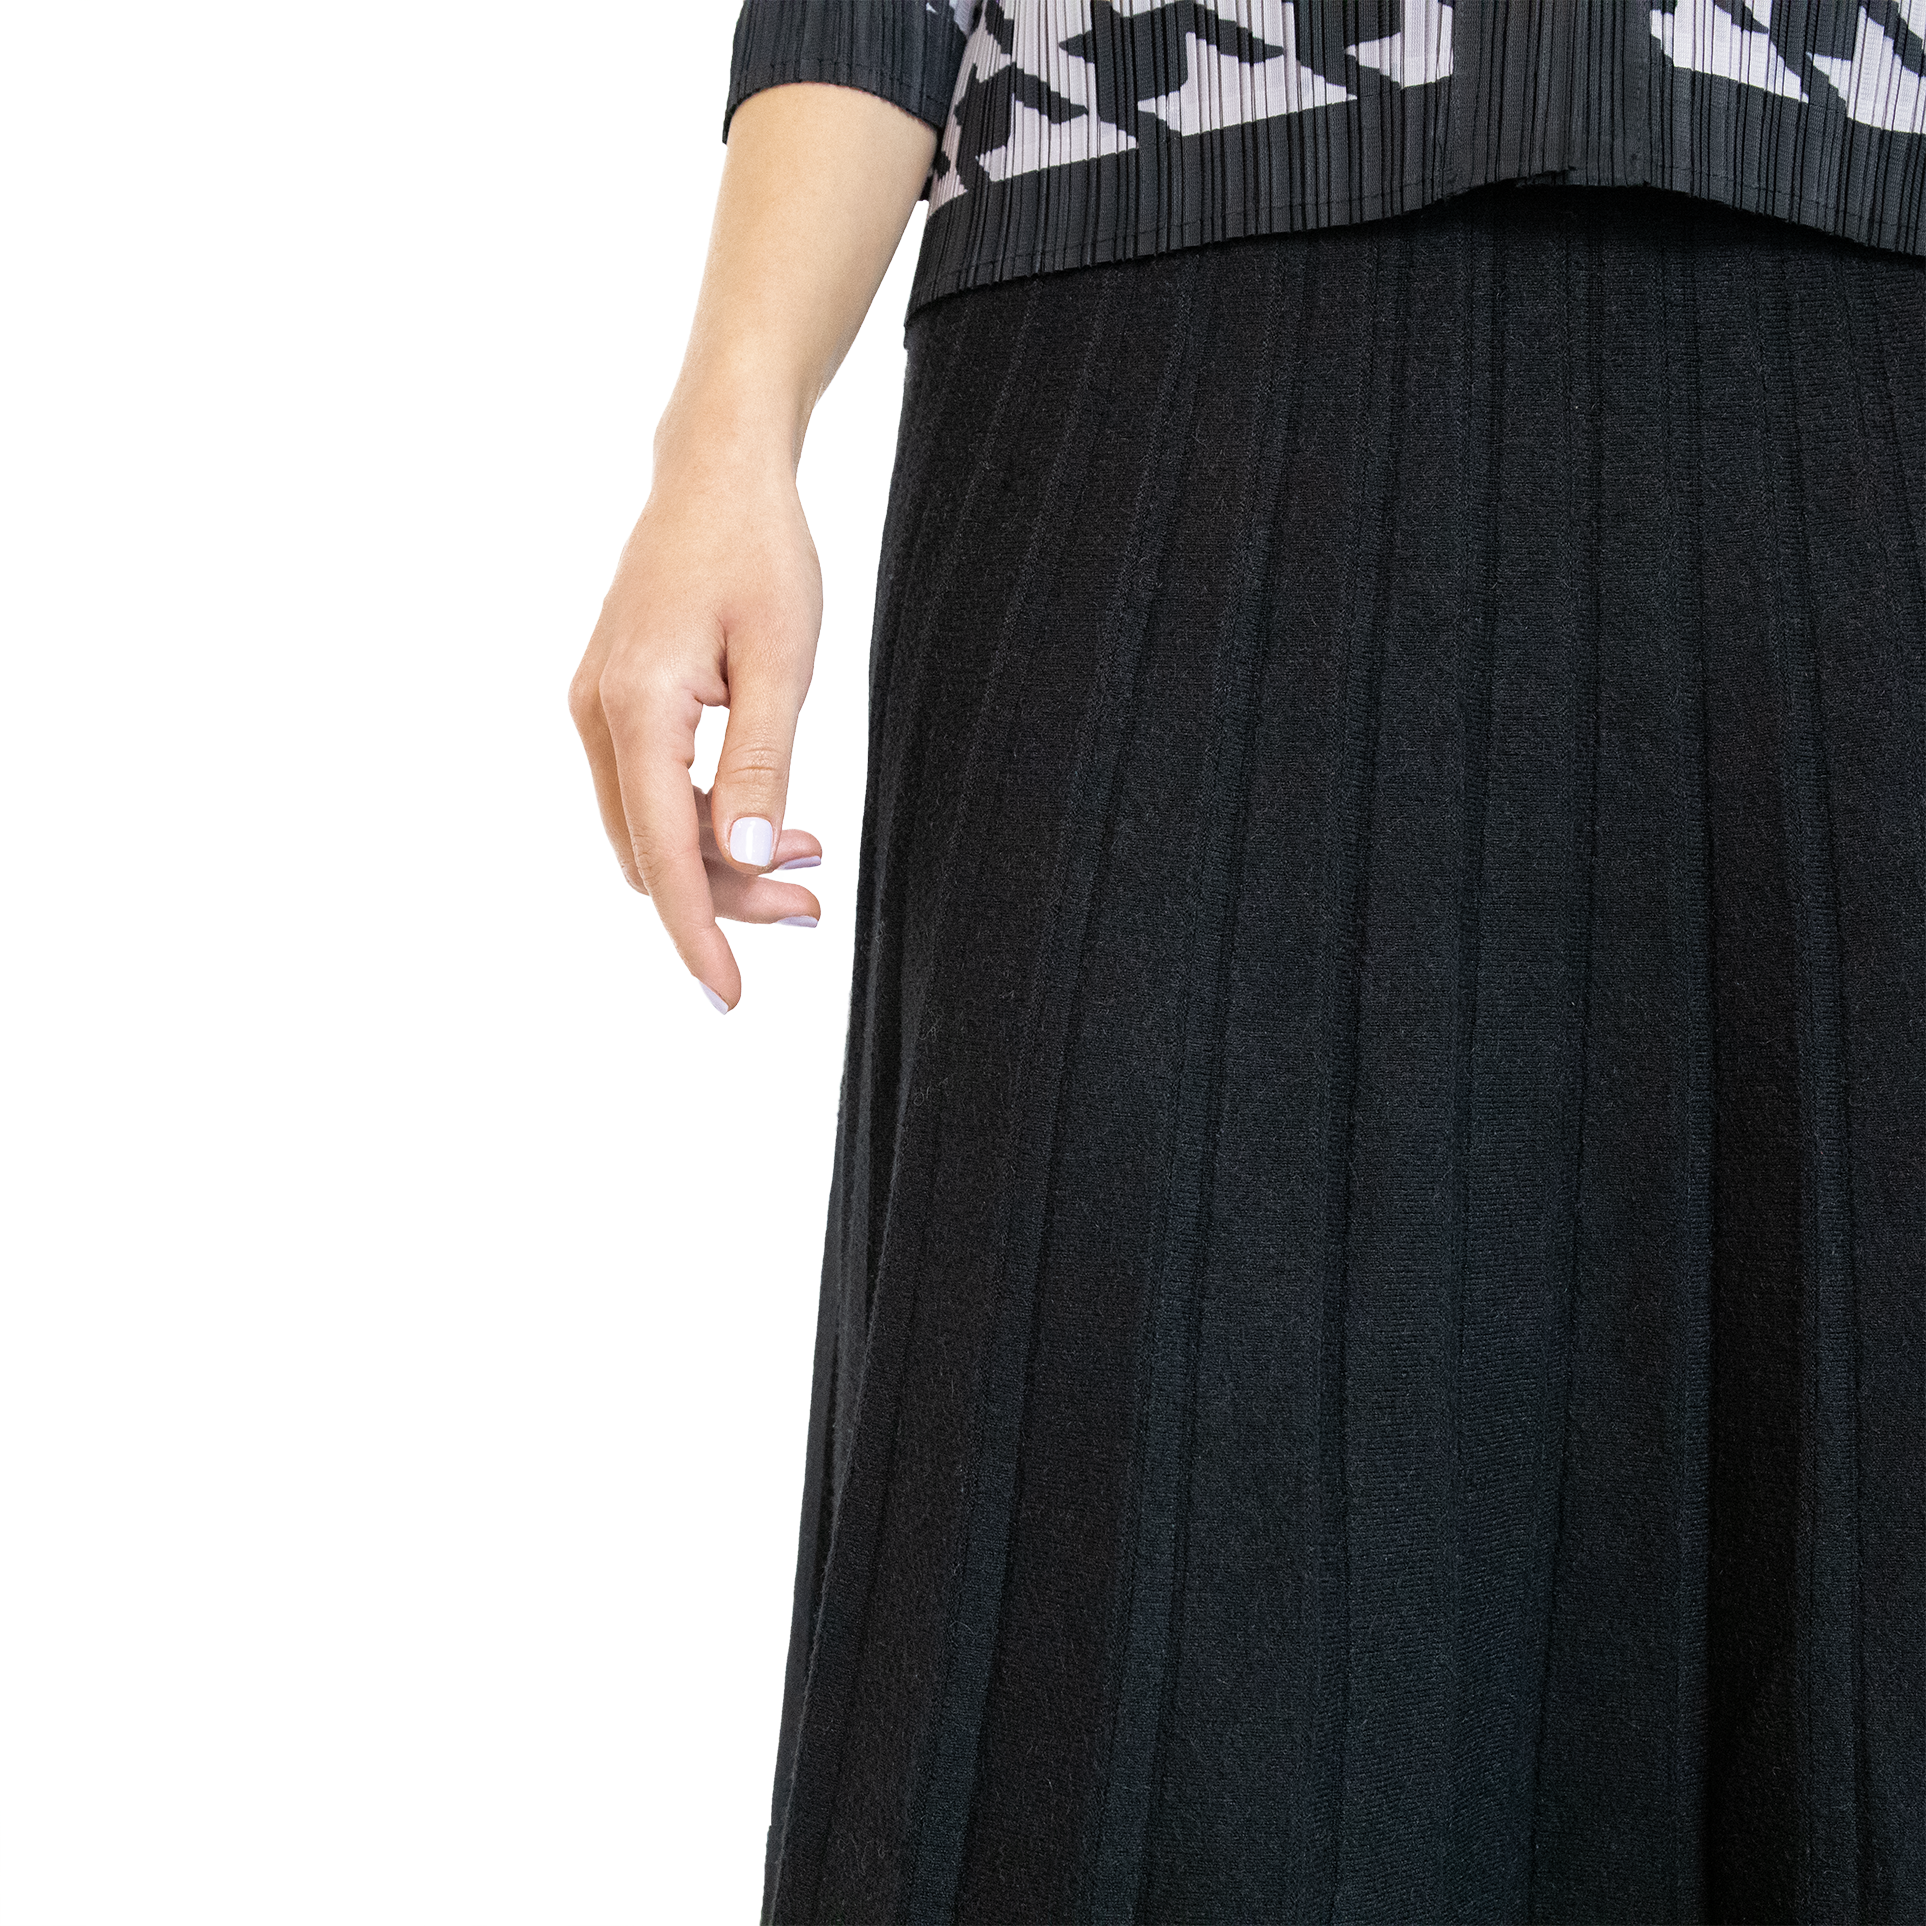 Stripe knit mdi skirt